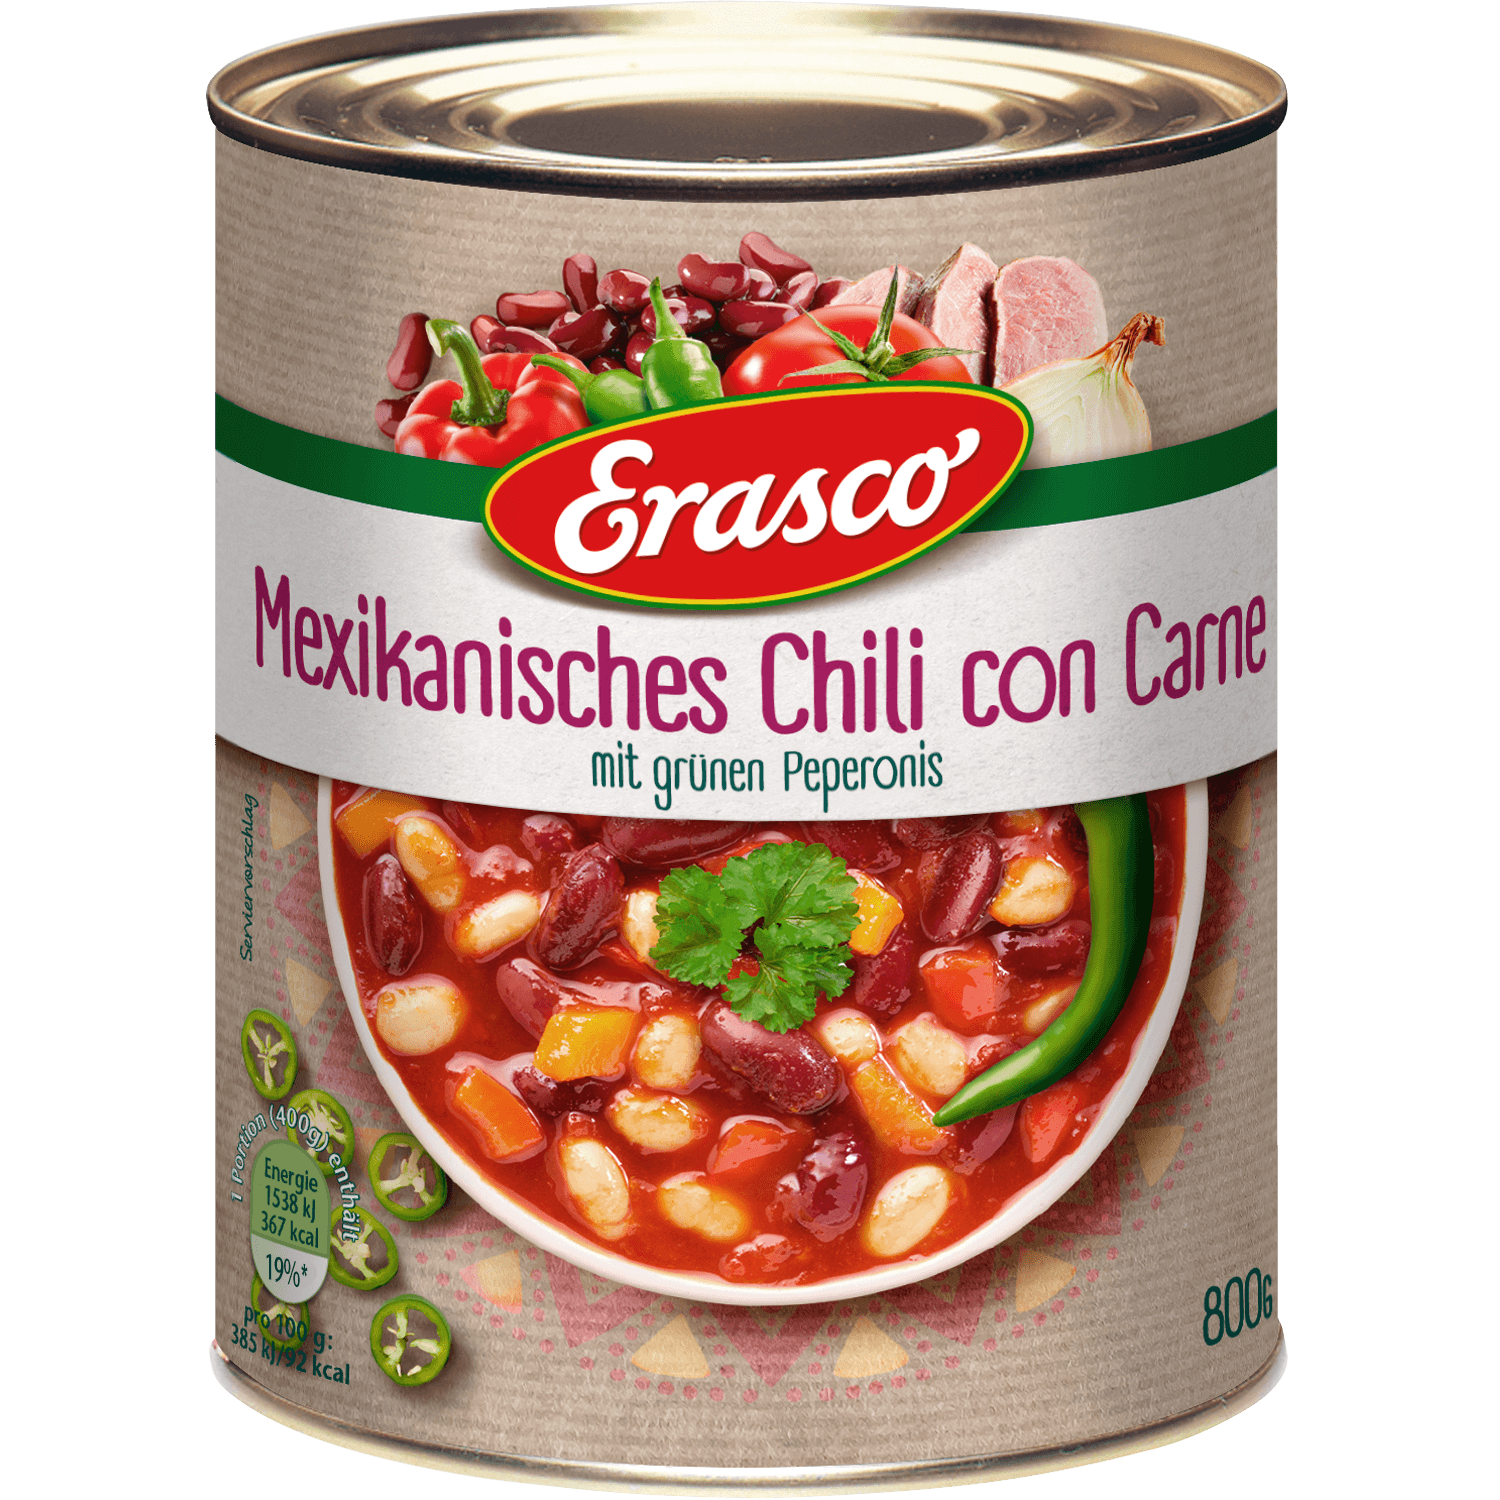 Erasco – Chili Con Carne – 800 g can / Chili Con Carne | German Deli Ph